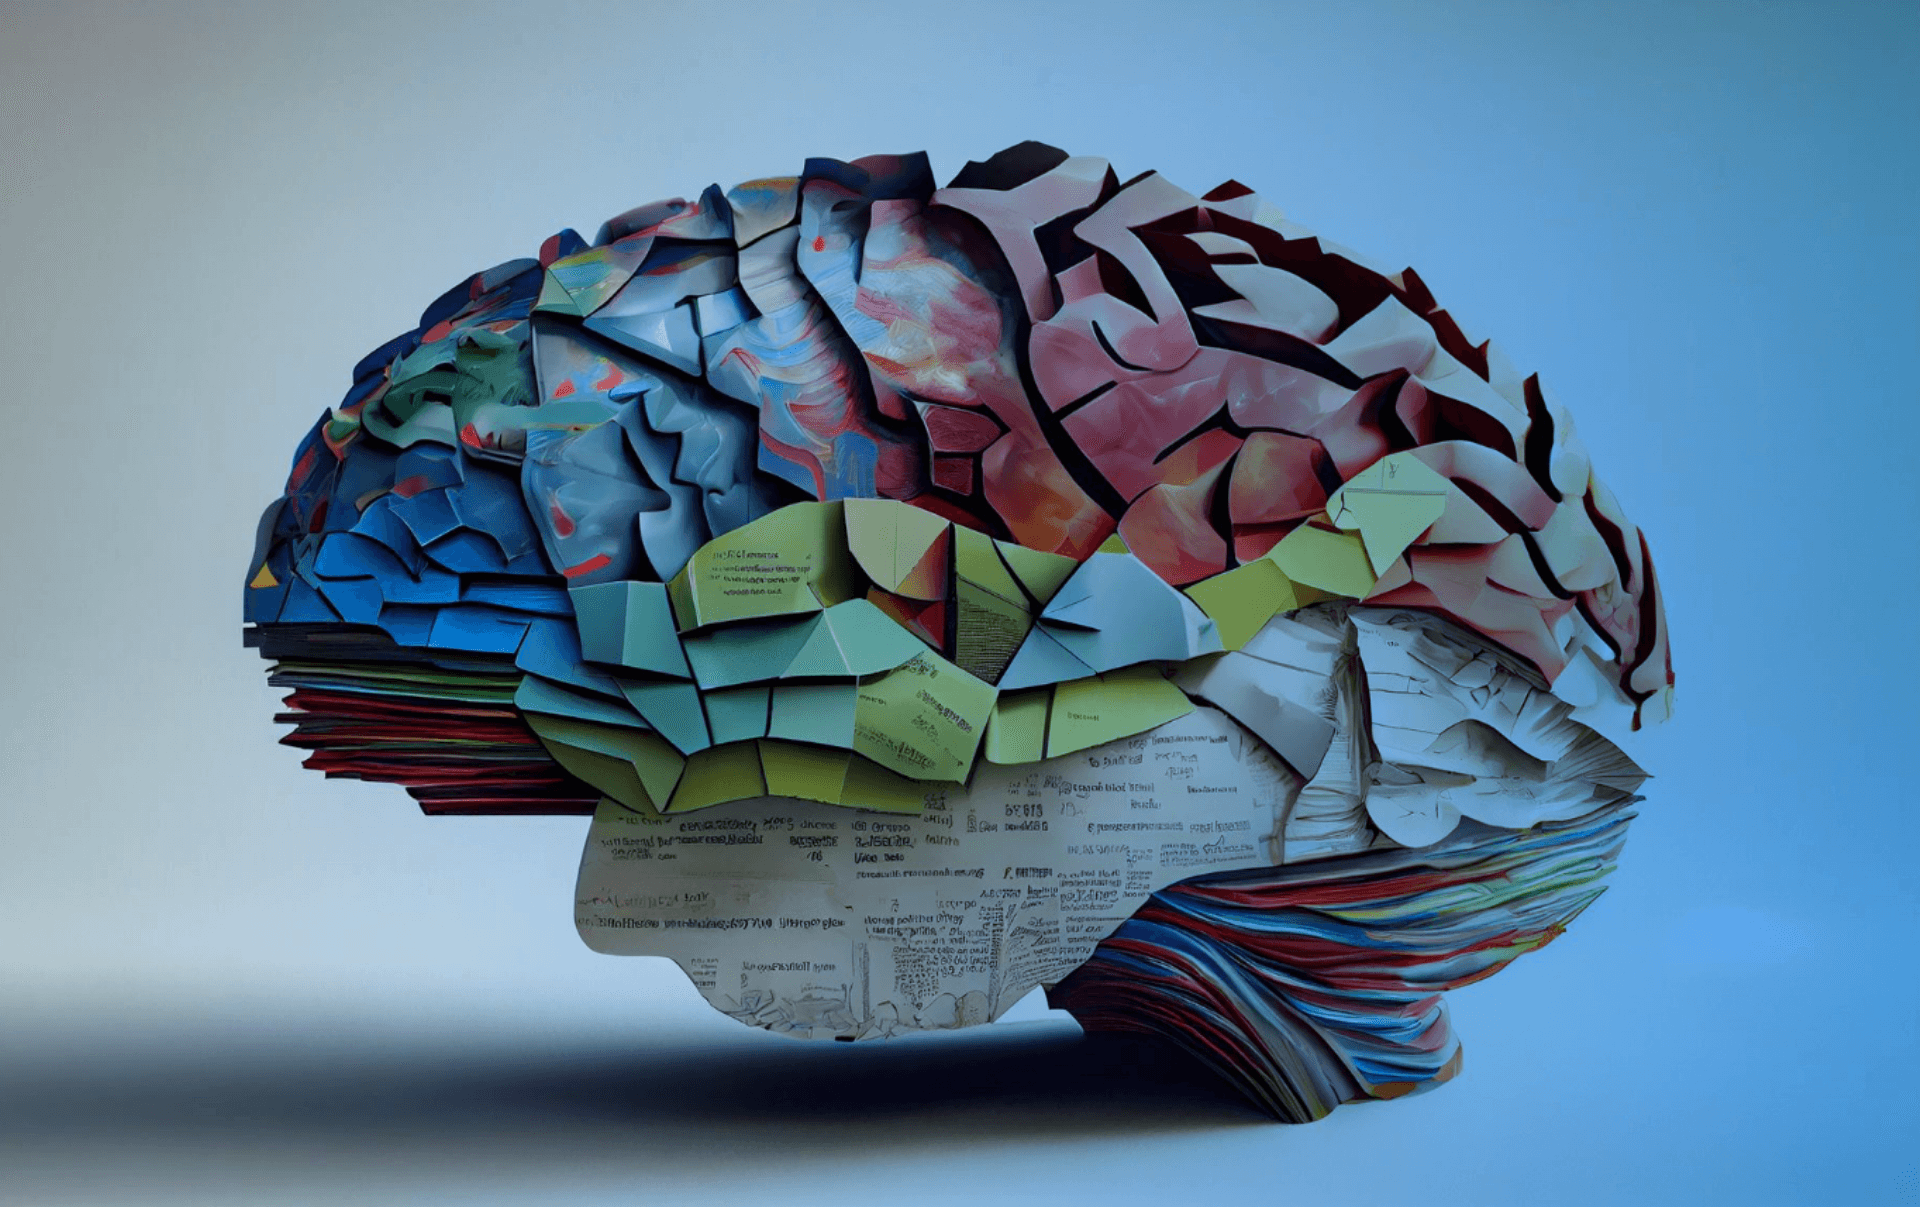 Mozog vytvorený z papierových post-itov